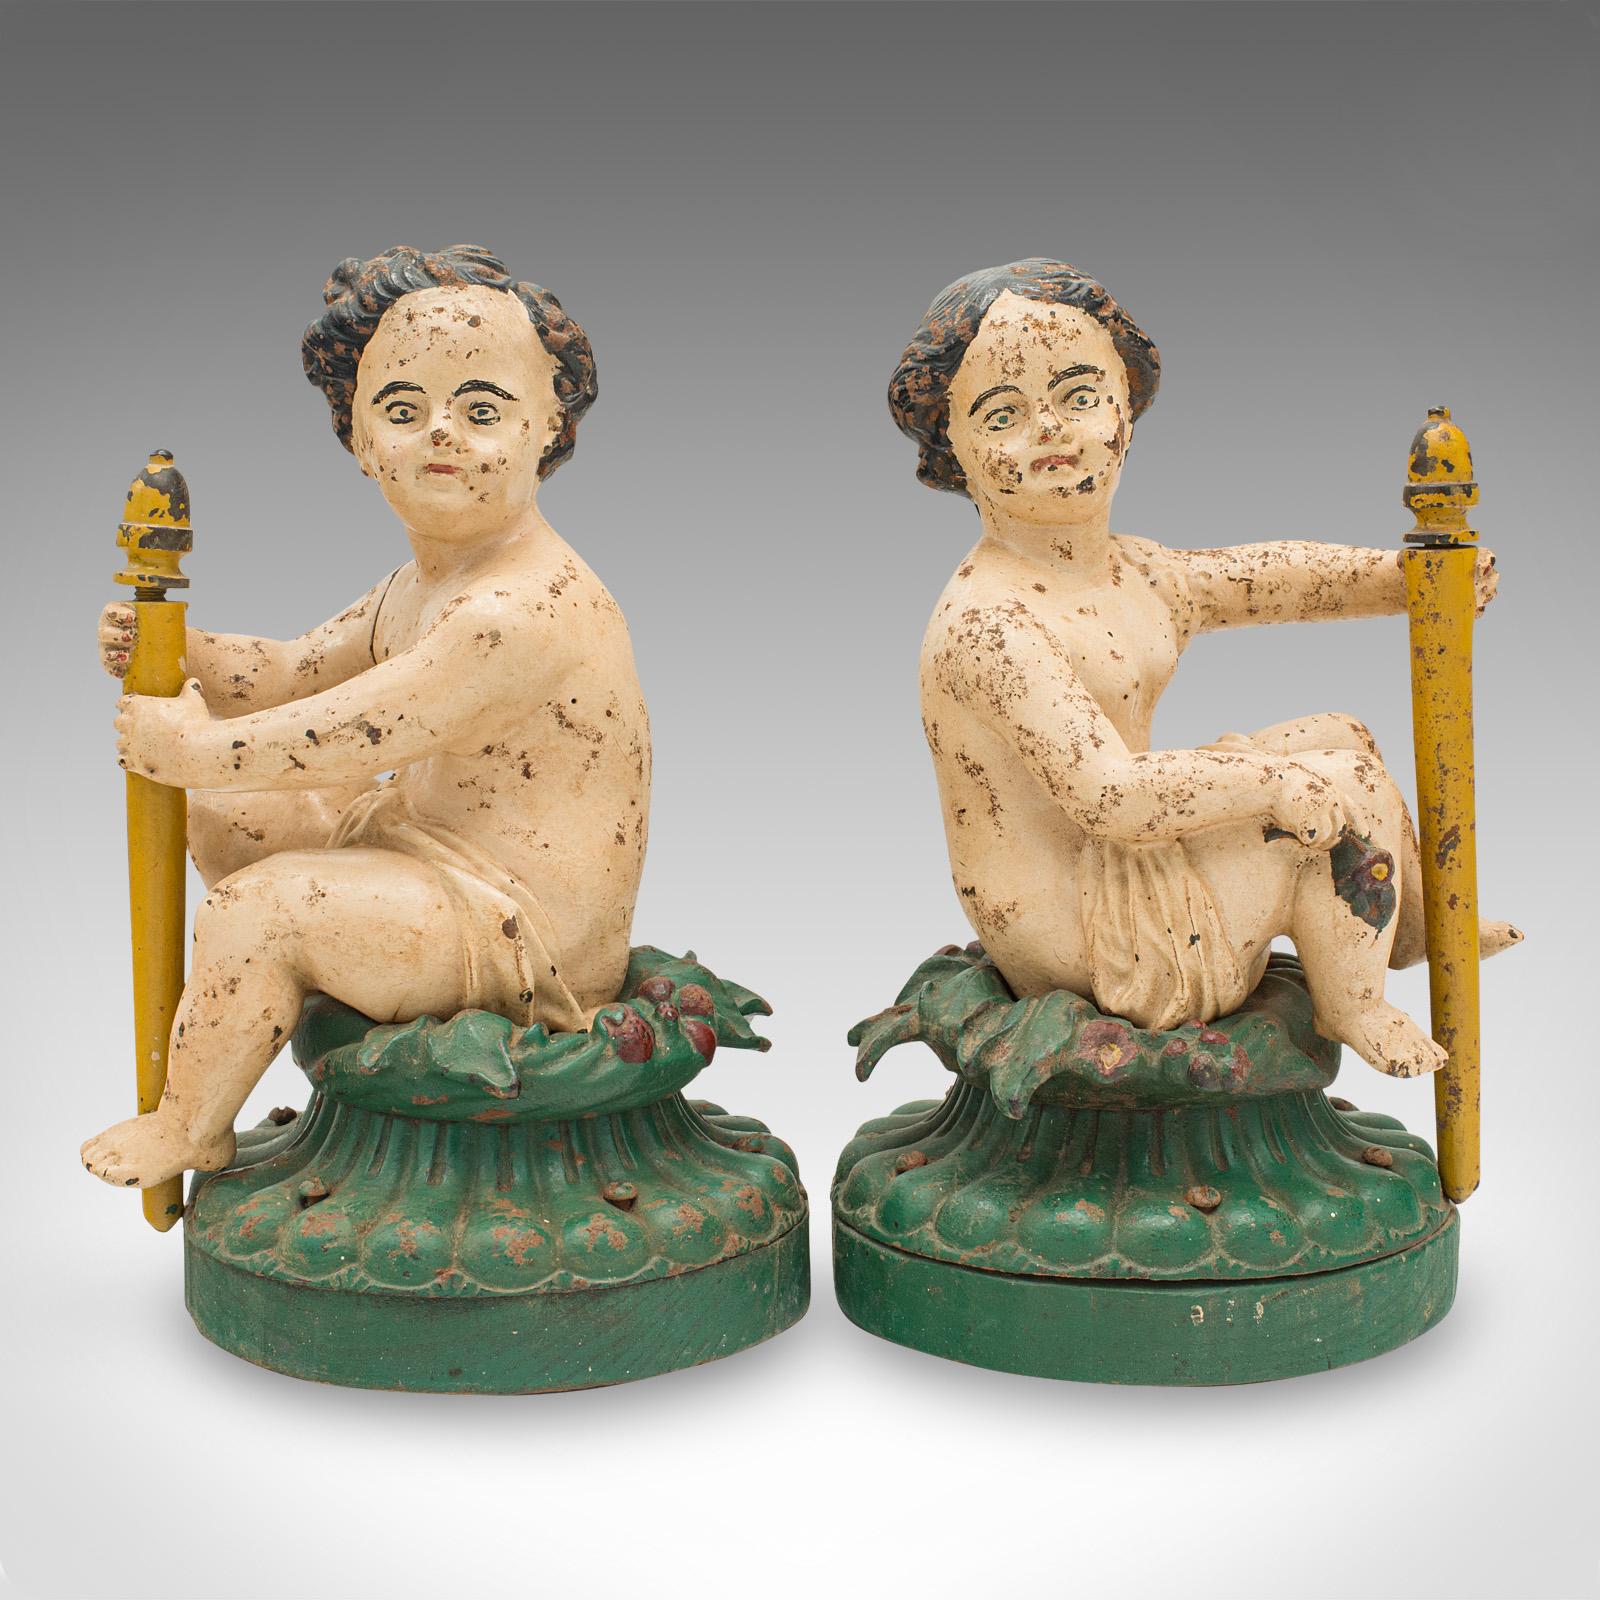 Dies ist ein Paar antiker dekorativer Figuren. Ein englischer, bemalter, gusseiserner Putto auf Ulmensockel, aus der viktorianischen Zeit, um 1870.

Herrlich ungewöhnliche Figuren mit rubeneskem Charme
Durchgehend mit einer wünschenswerten